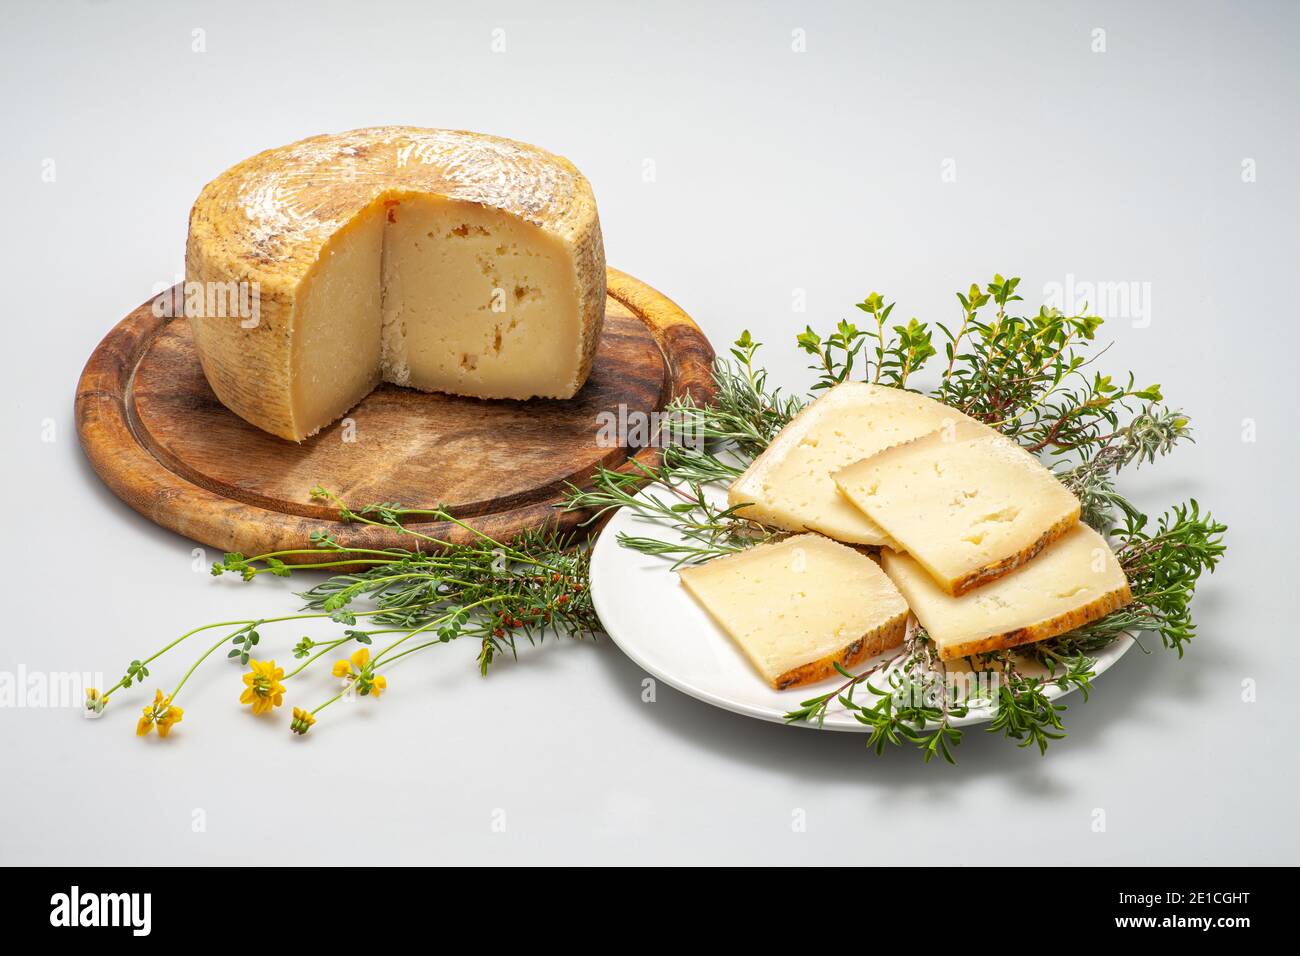 Slices of Italian pecorino cheese with monjtagna grass on a white background. Abruzzo, Italy, Europe Stock Photo